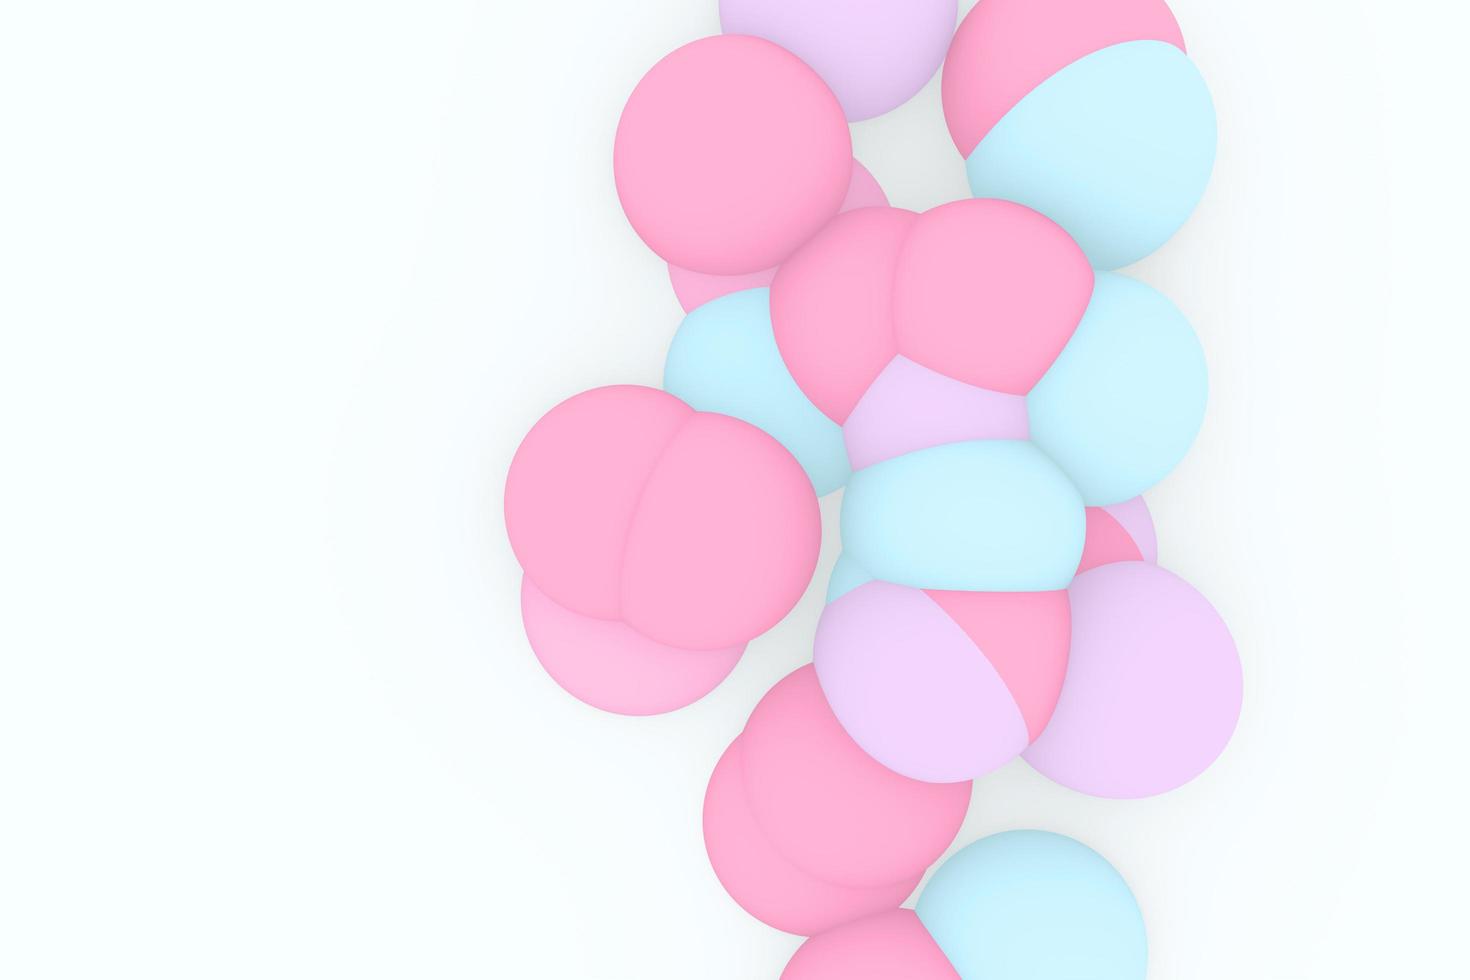 fond dégradé avec des formes organiques roses et bleues. morphing blobs colorés. illustration vectorielle 3d. couleurs fluides liquides pour la conception de bannières ou d'enseignes photo